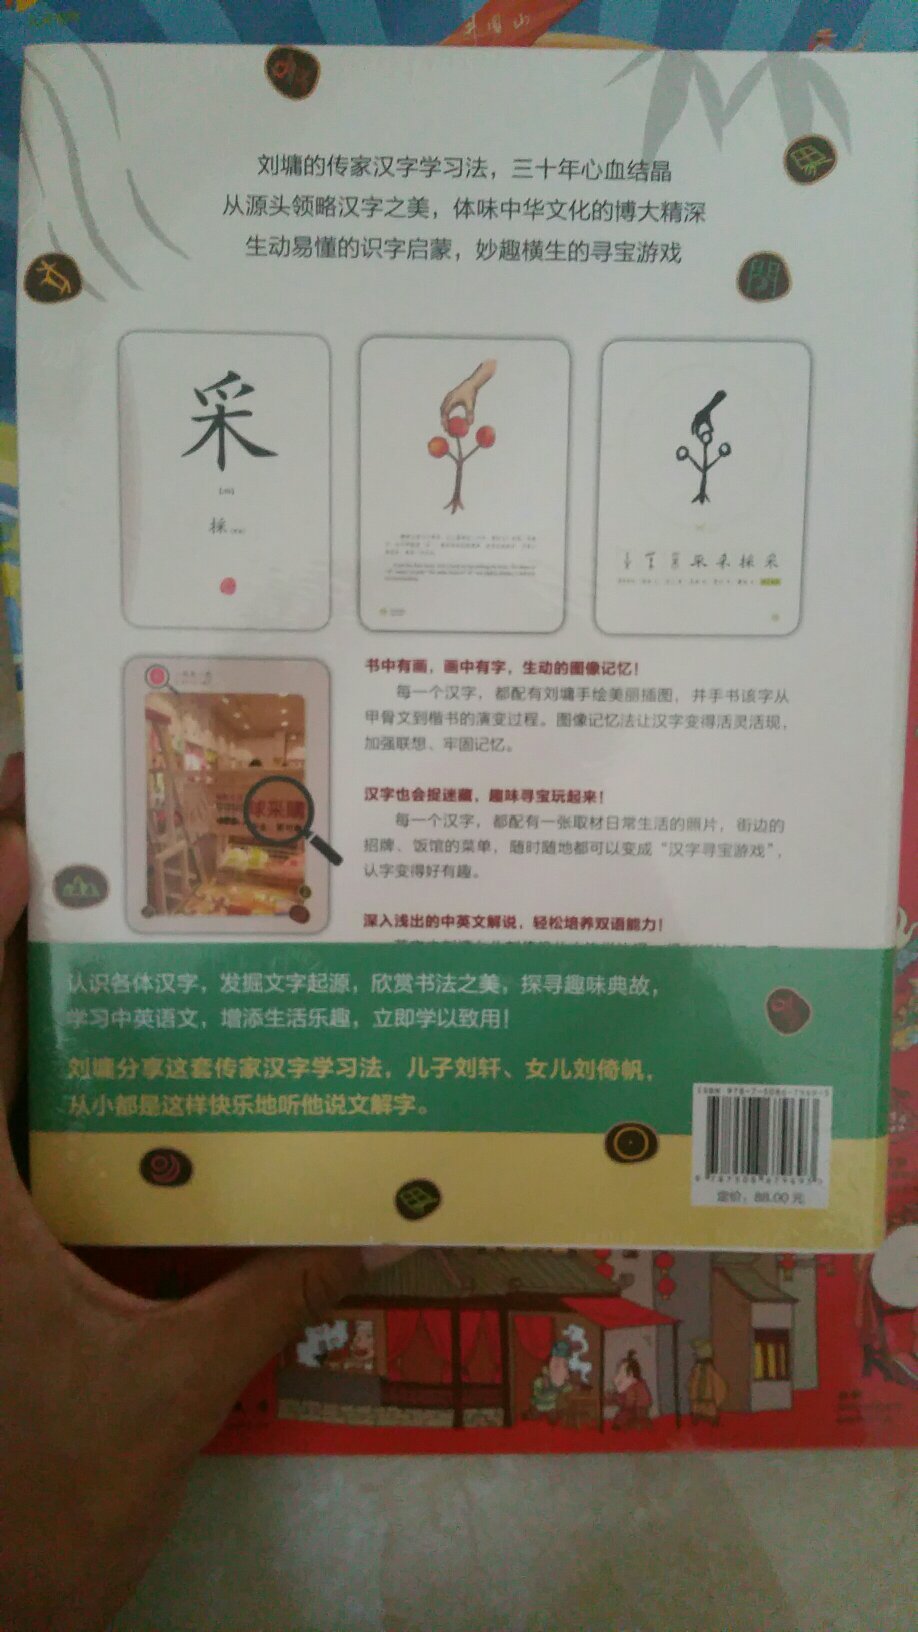 喜欢刘墉的书，平易近人，写的都很好，教育孩子也很好，买过他，其他处看这本也是他出了，然后就买了，一直说装订都很精美